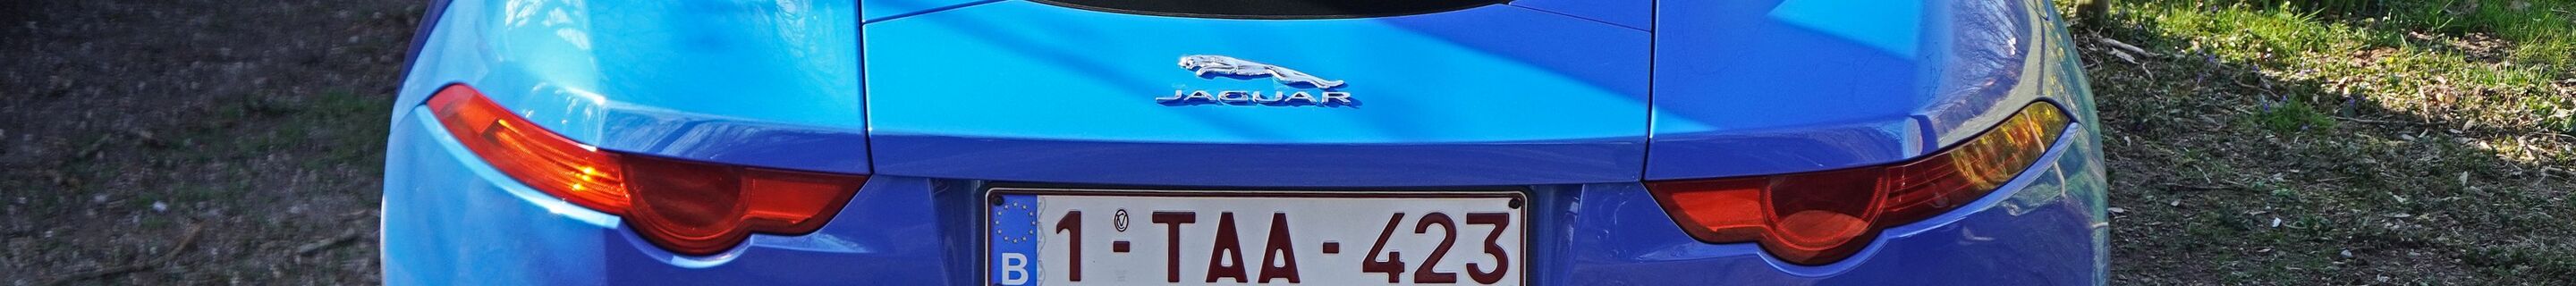 Jaguar F-TYPE S Coupé British Design Edition